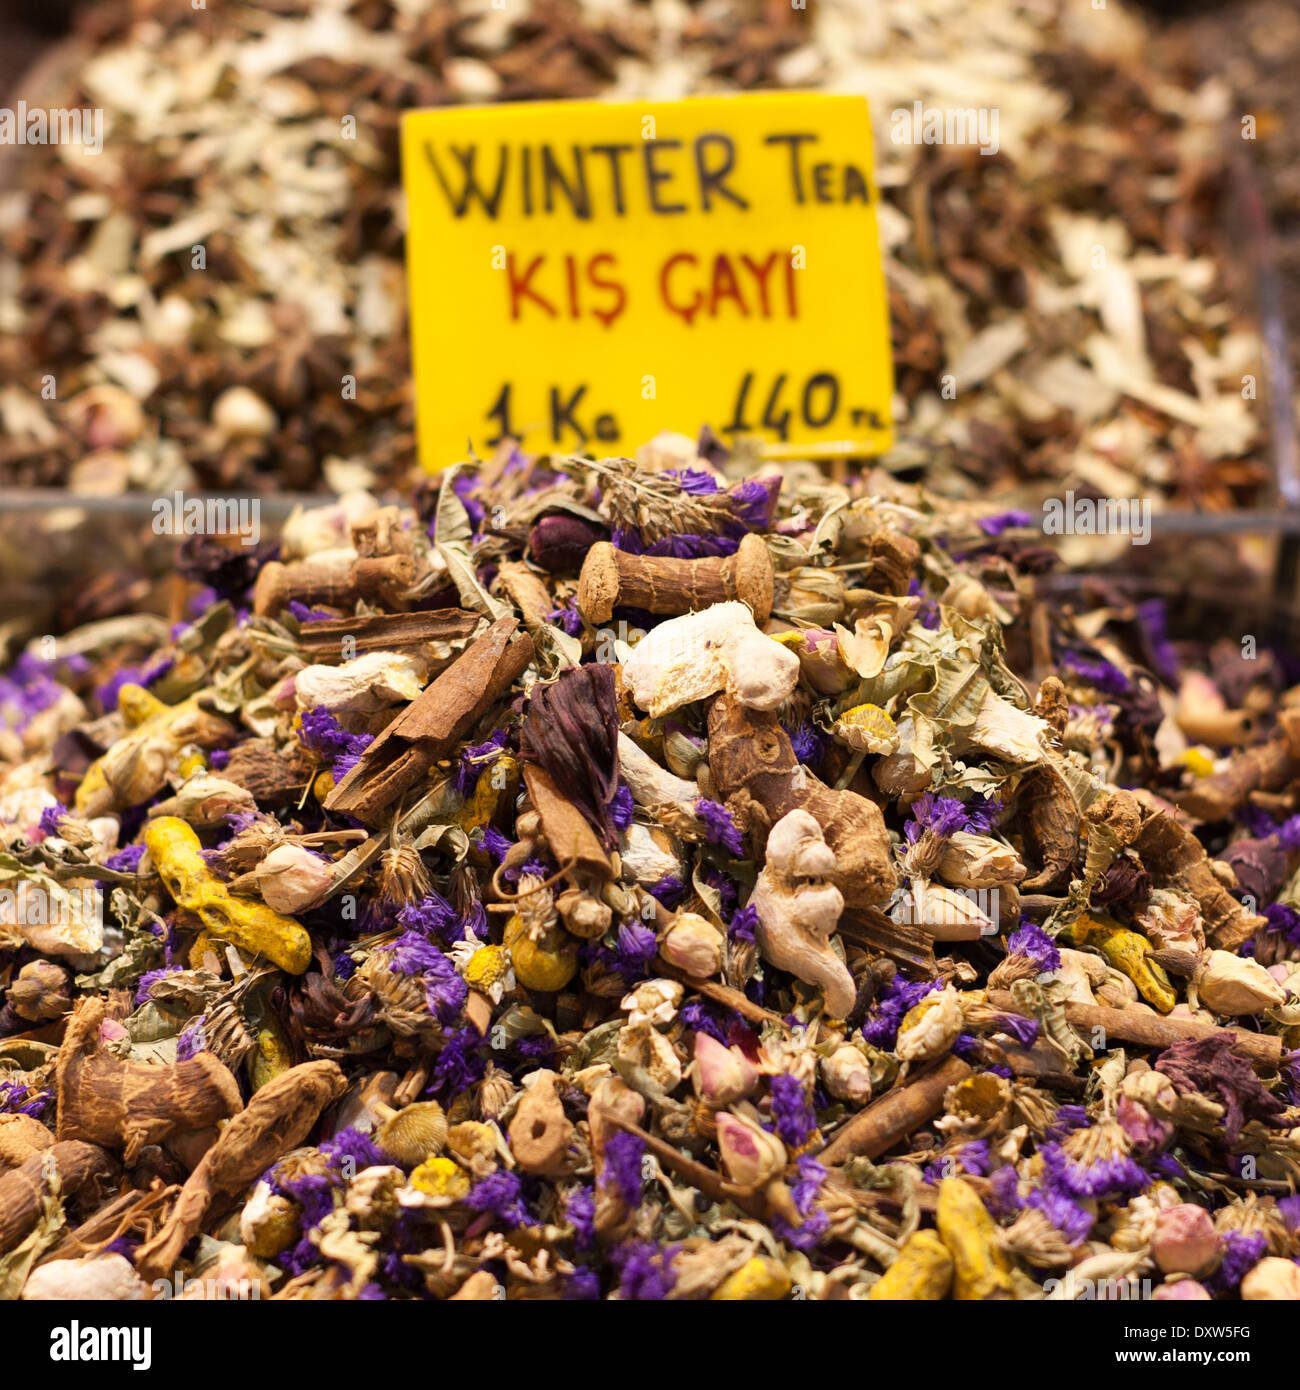 Winter tea (Kis Cayi) mixture in turkish market stall Stock Photo